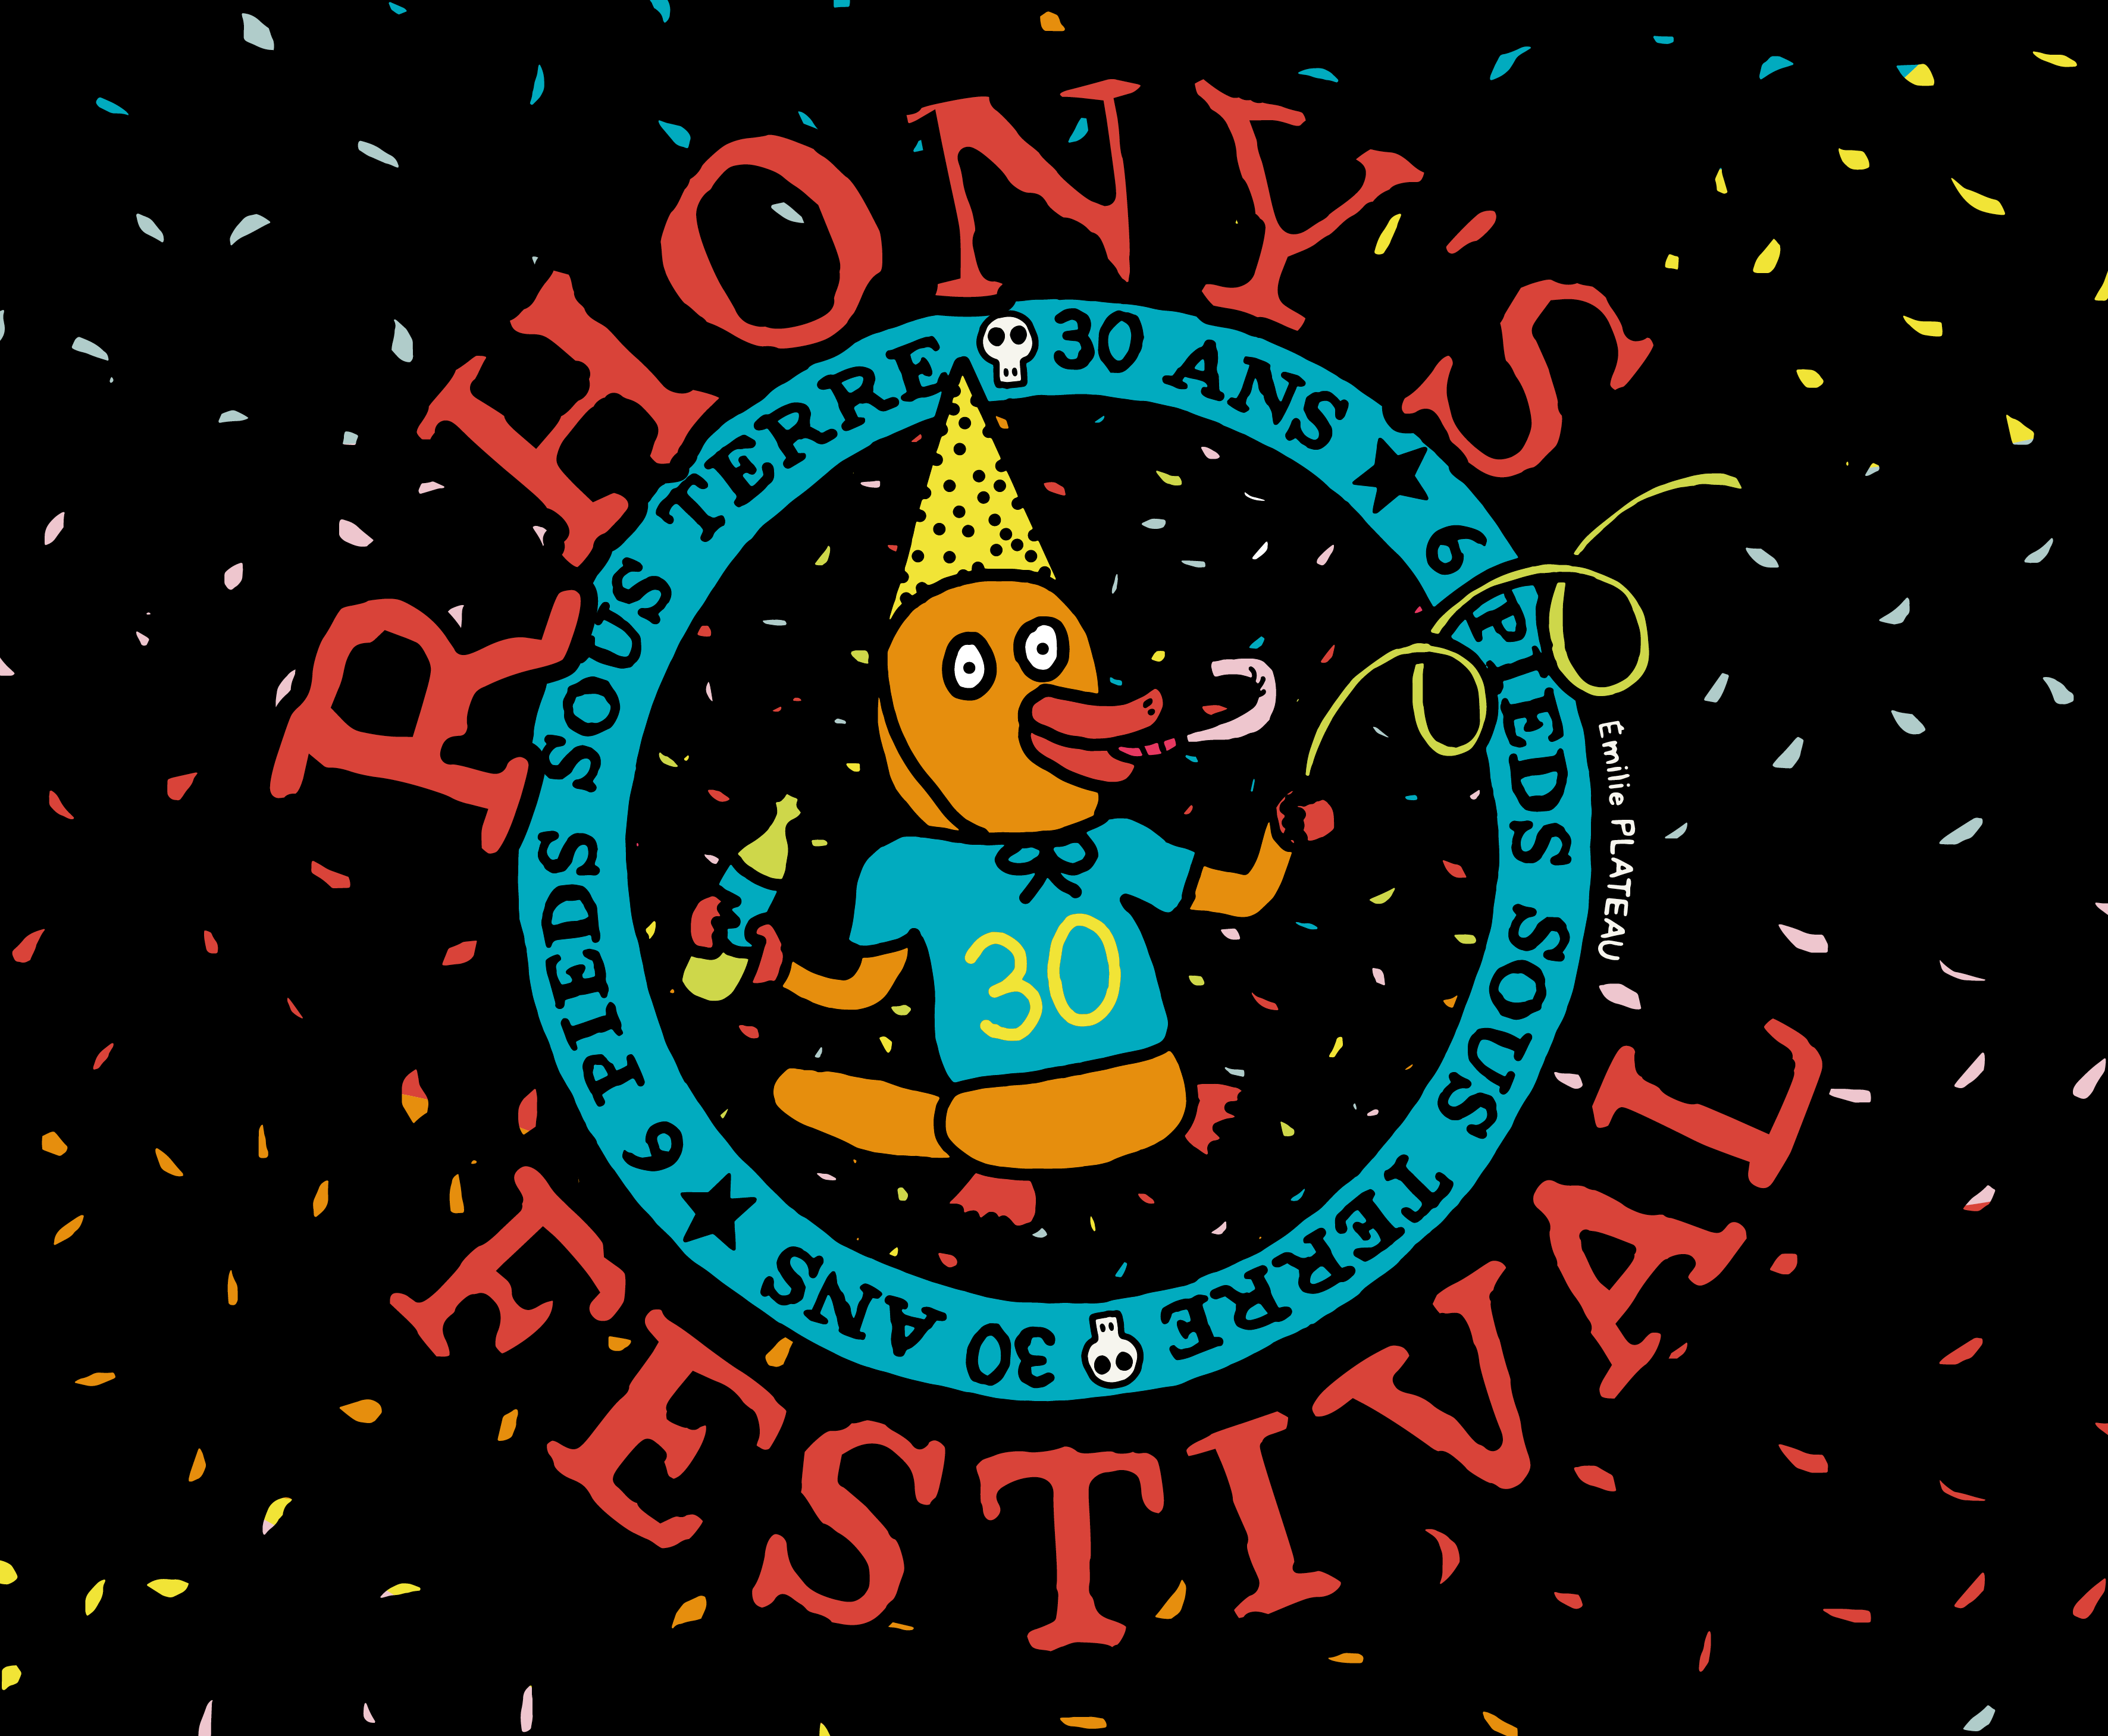 Rhony’s Festival :La bande des 6 Piedsfête ses 30 ans